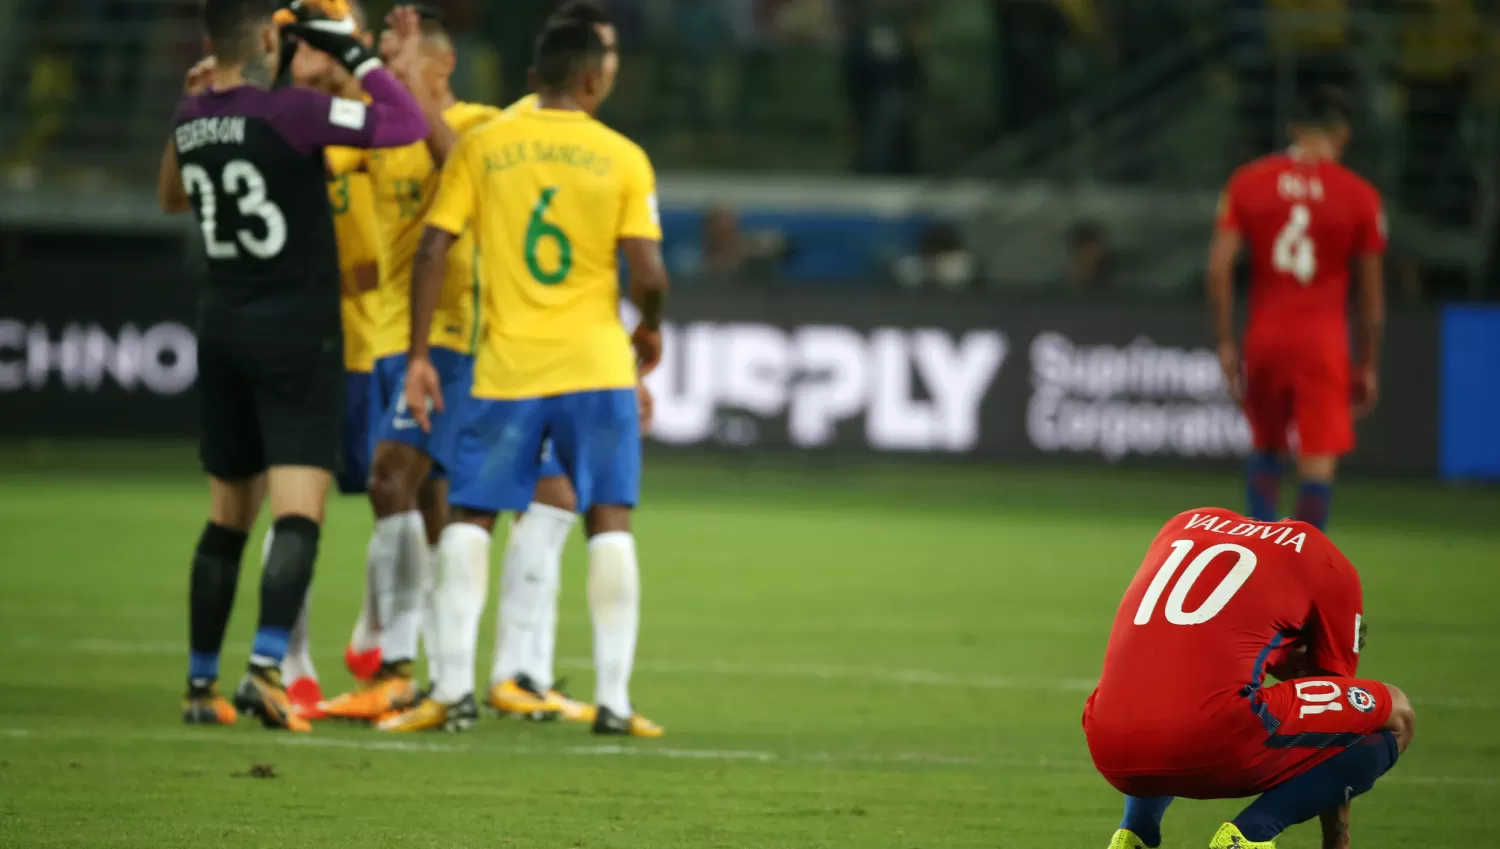 DOLOR. Los jugadores de Chile se lamentan mientras que los brasileños festejan. REUTERS